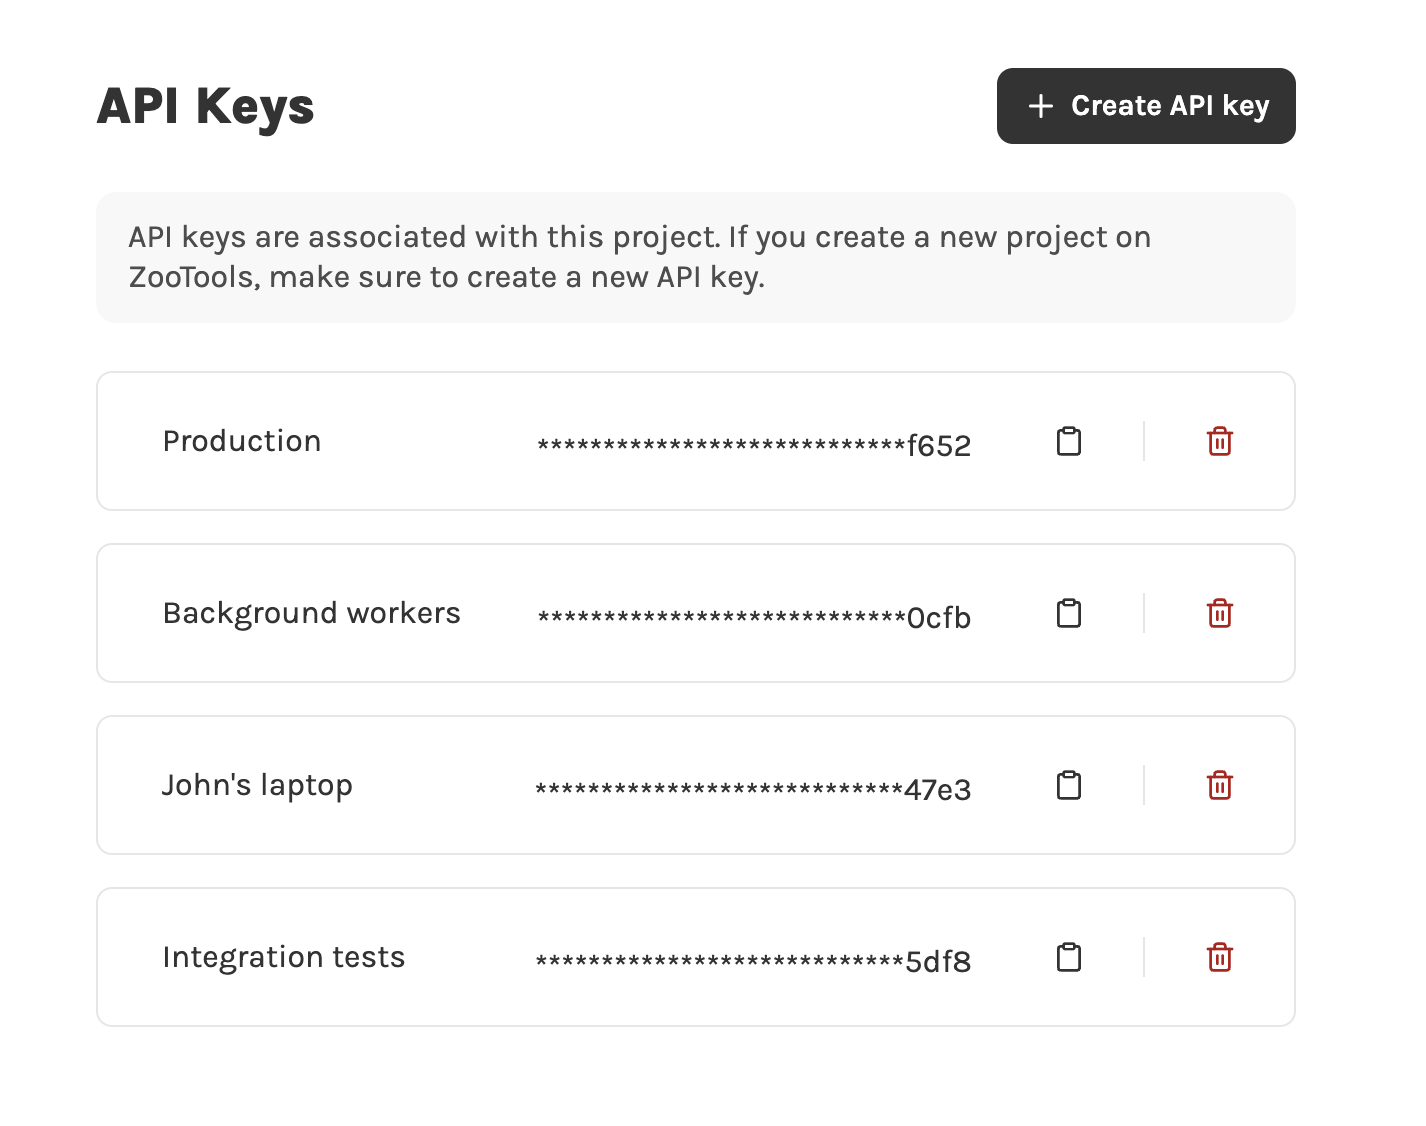 see list of API keys